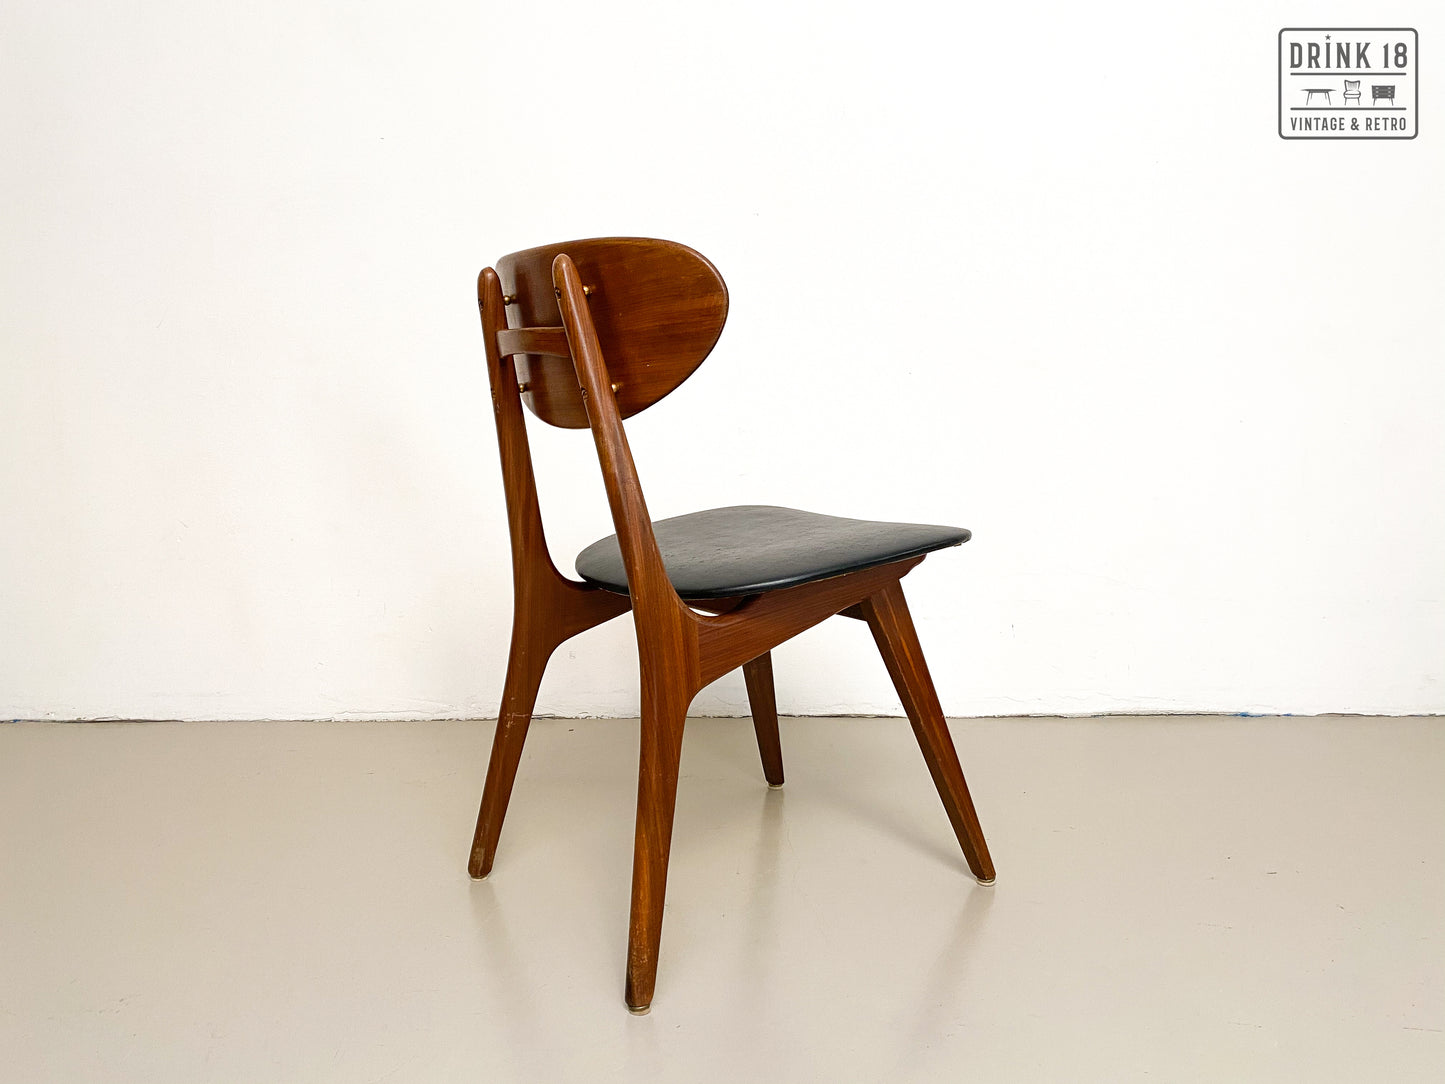 Vier vintage stoelen - Louis van Teeffelen